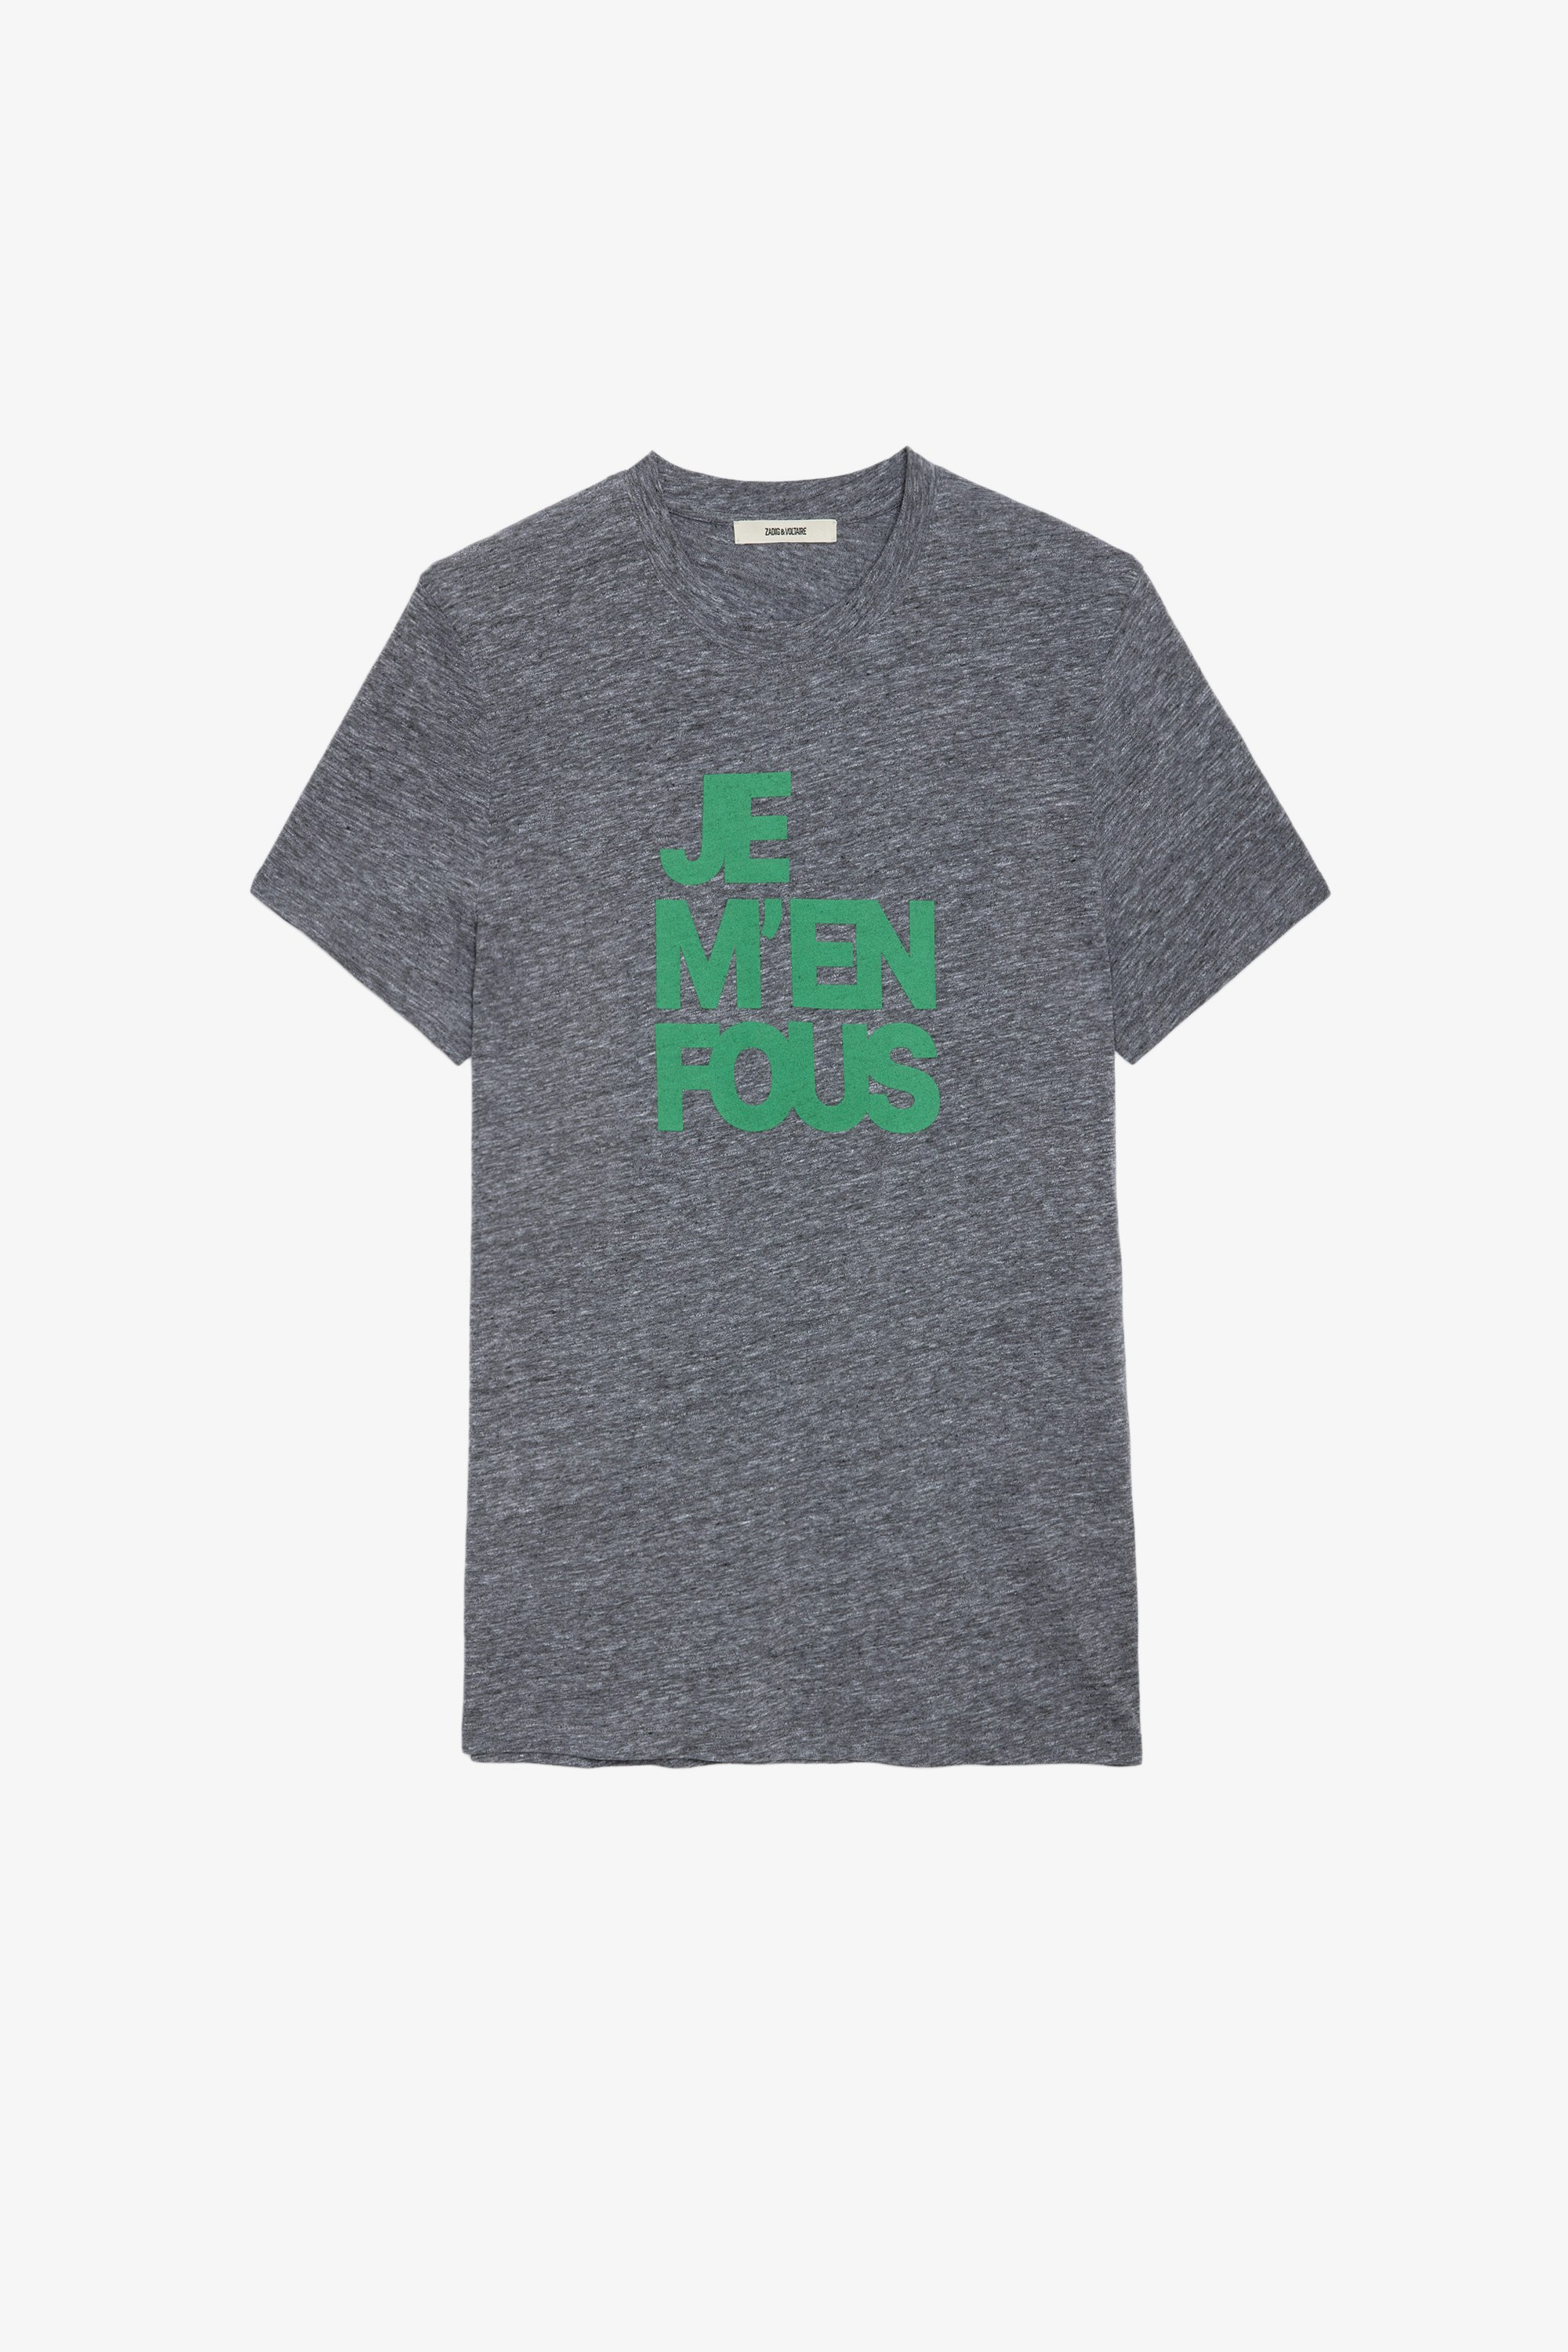 Camiseta Tommy Camiseta gris de algodón con mensaje «Je m’en fous» para hombre